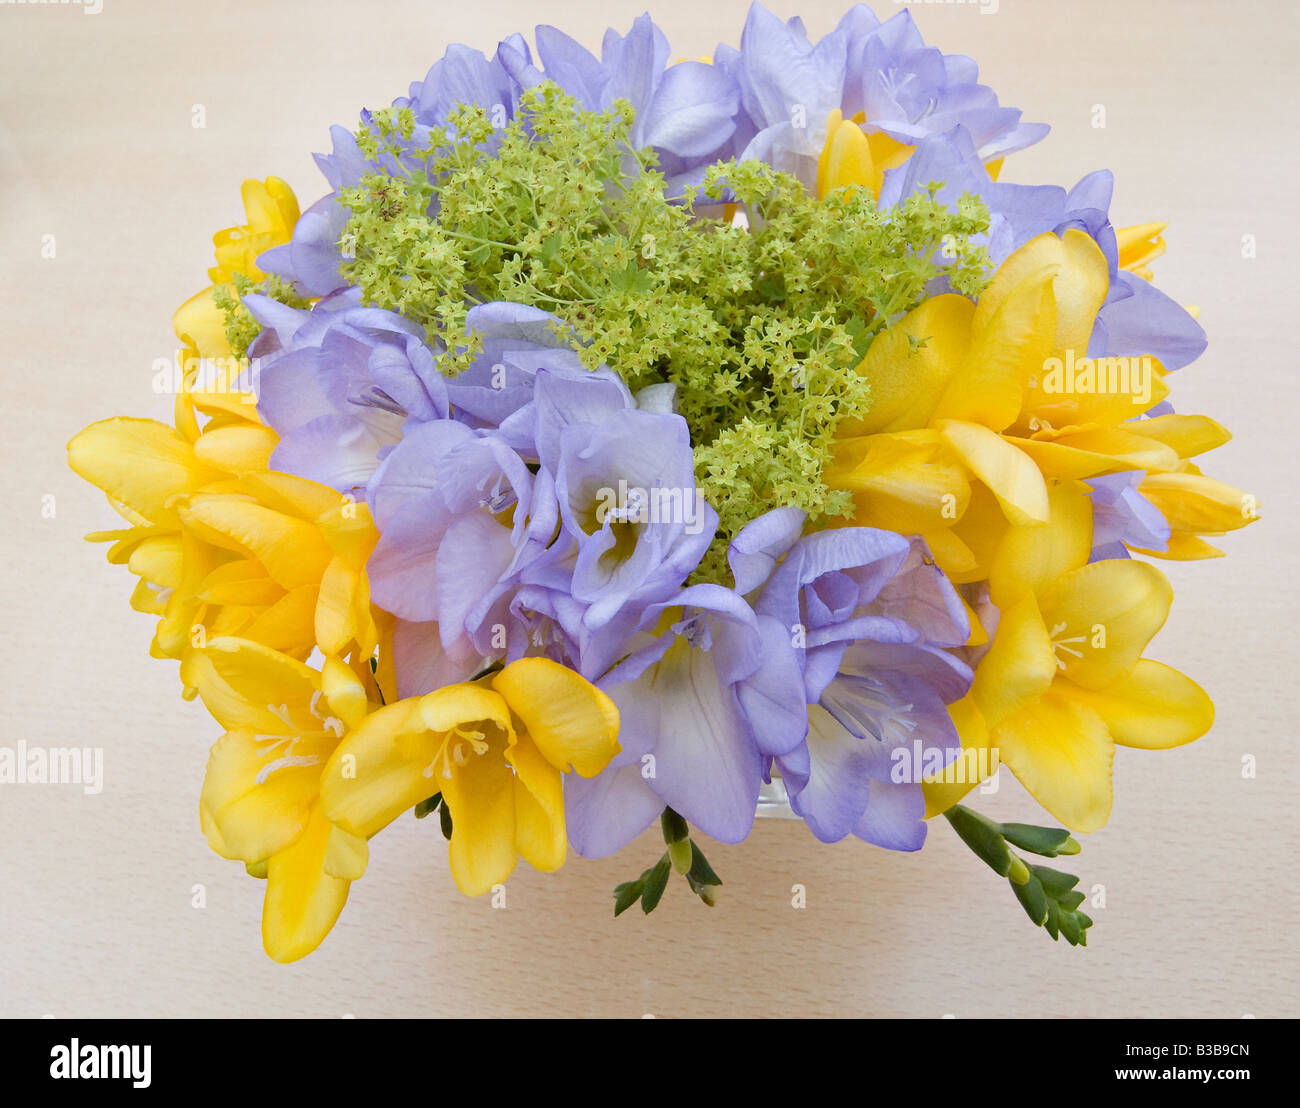 PosY der blauen und gelben Freesia-Blumen Stockfoto